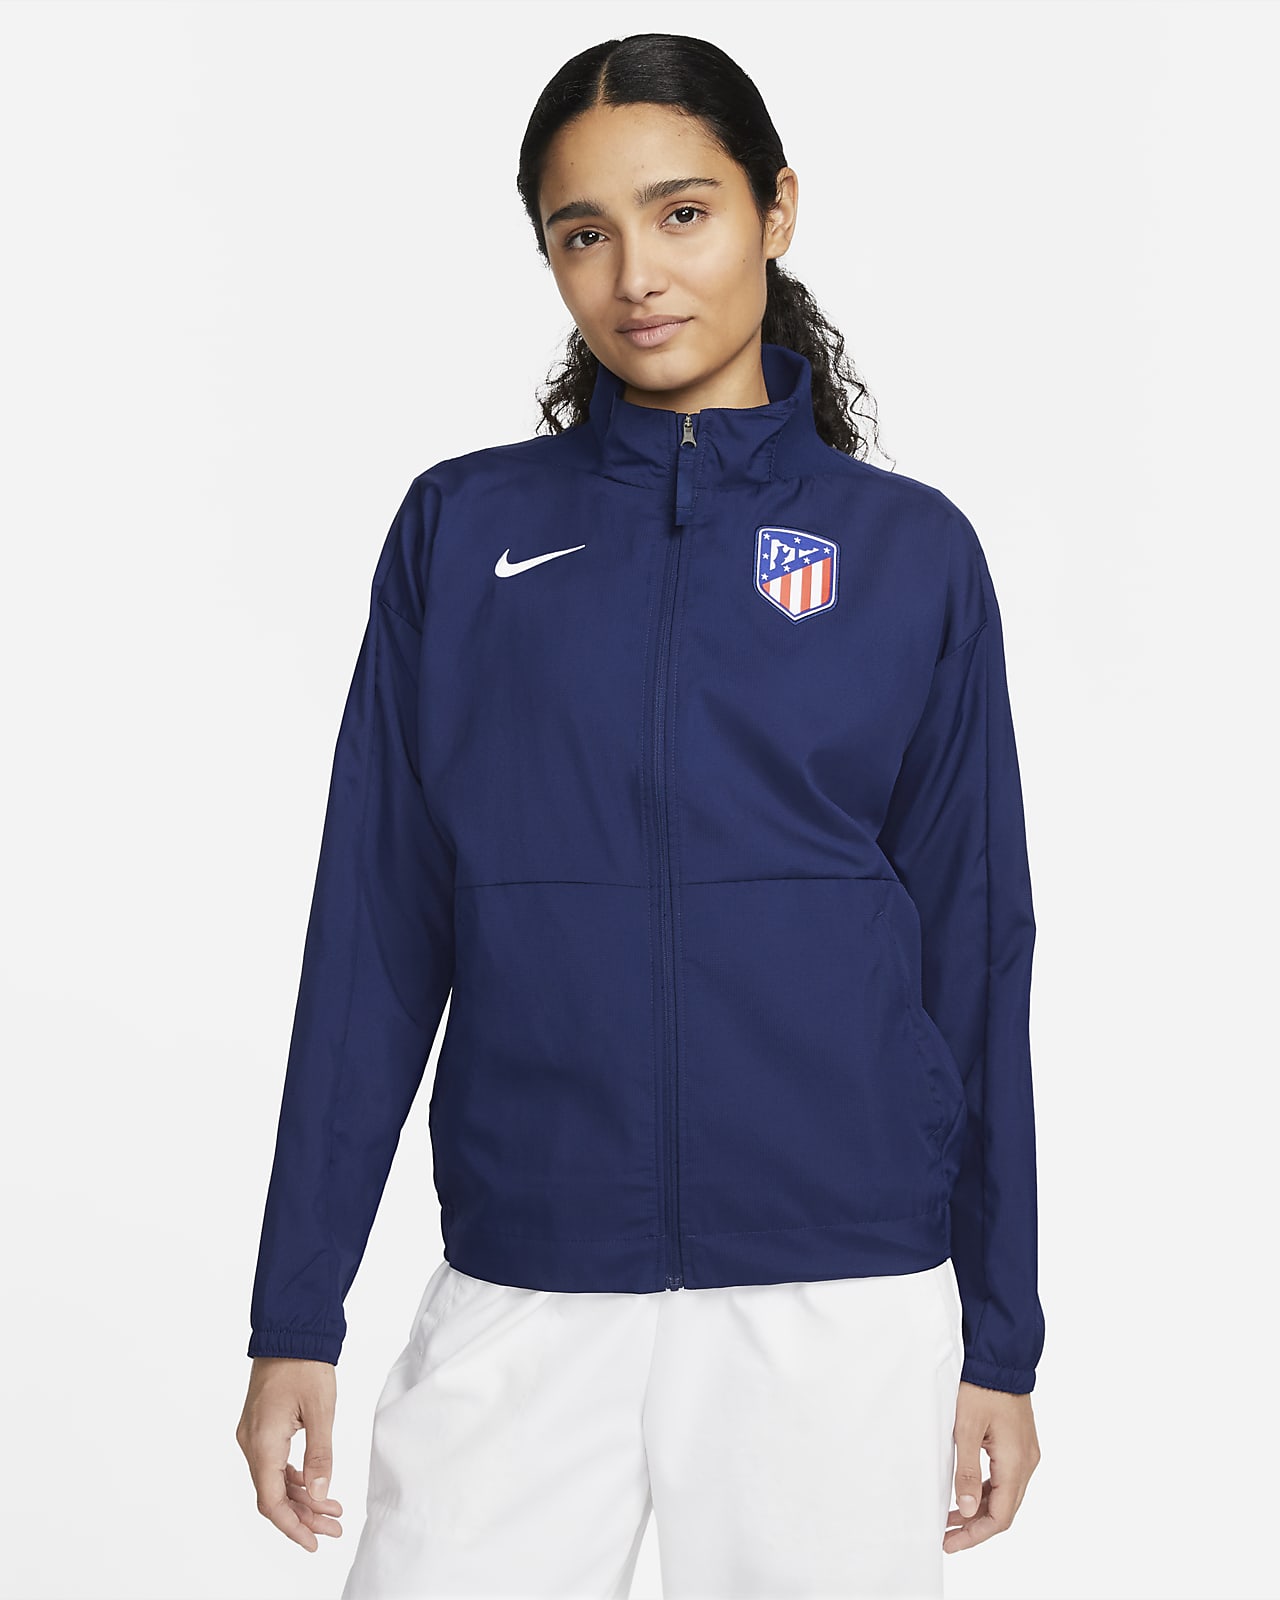 Sudadera con capucha Nike Fleece del Atlético de Madrid - Azul - Mujer